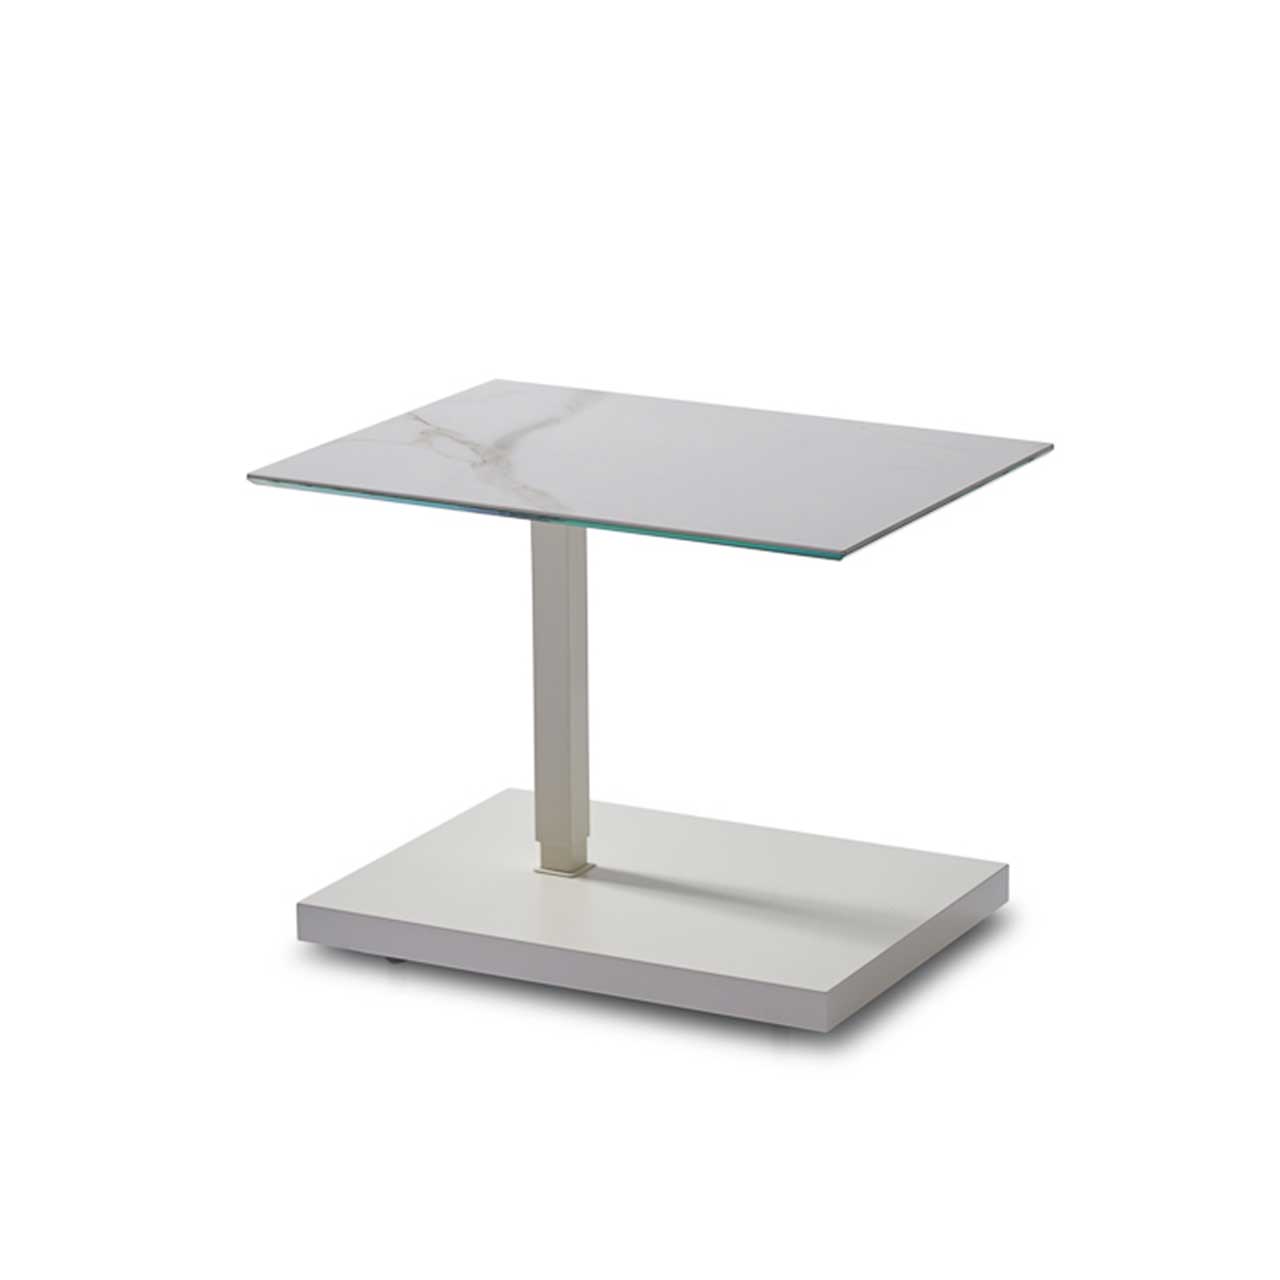 Ronald Schmitt – Beistelltisch Kolo K 729 - unten | Tischplatte Keramik Calacatta, Sockel MDF weiß